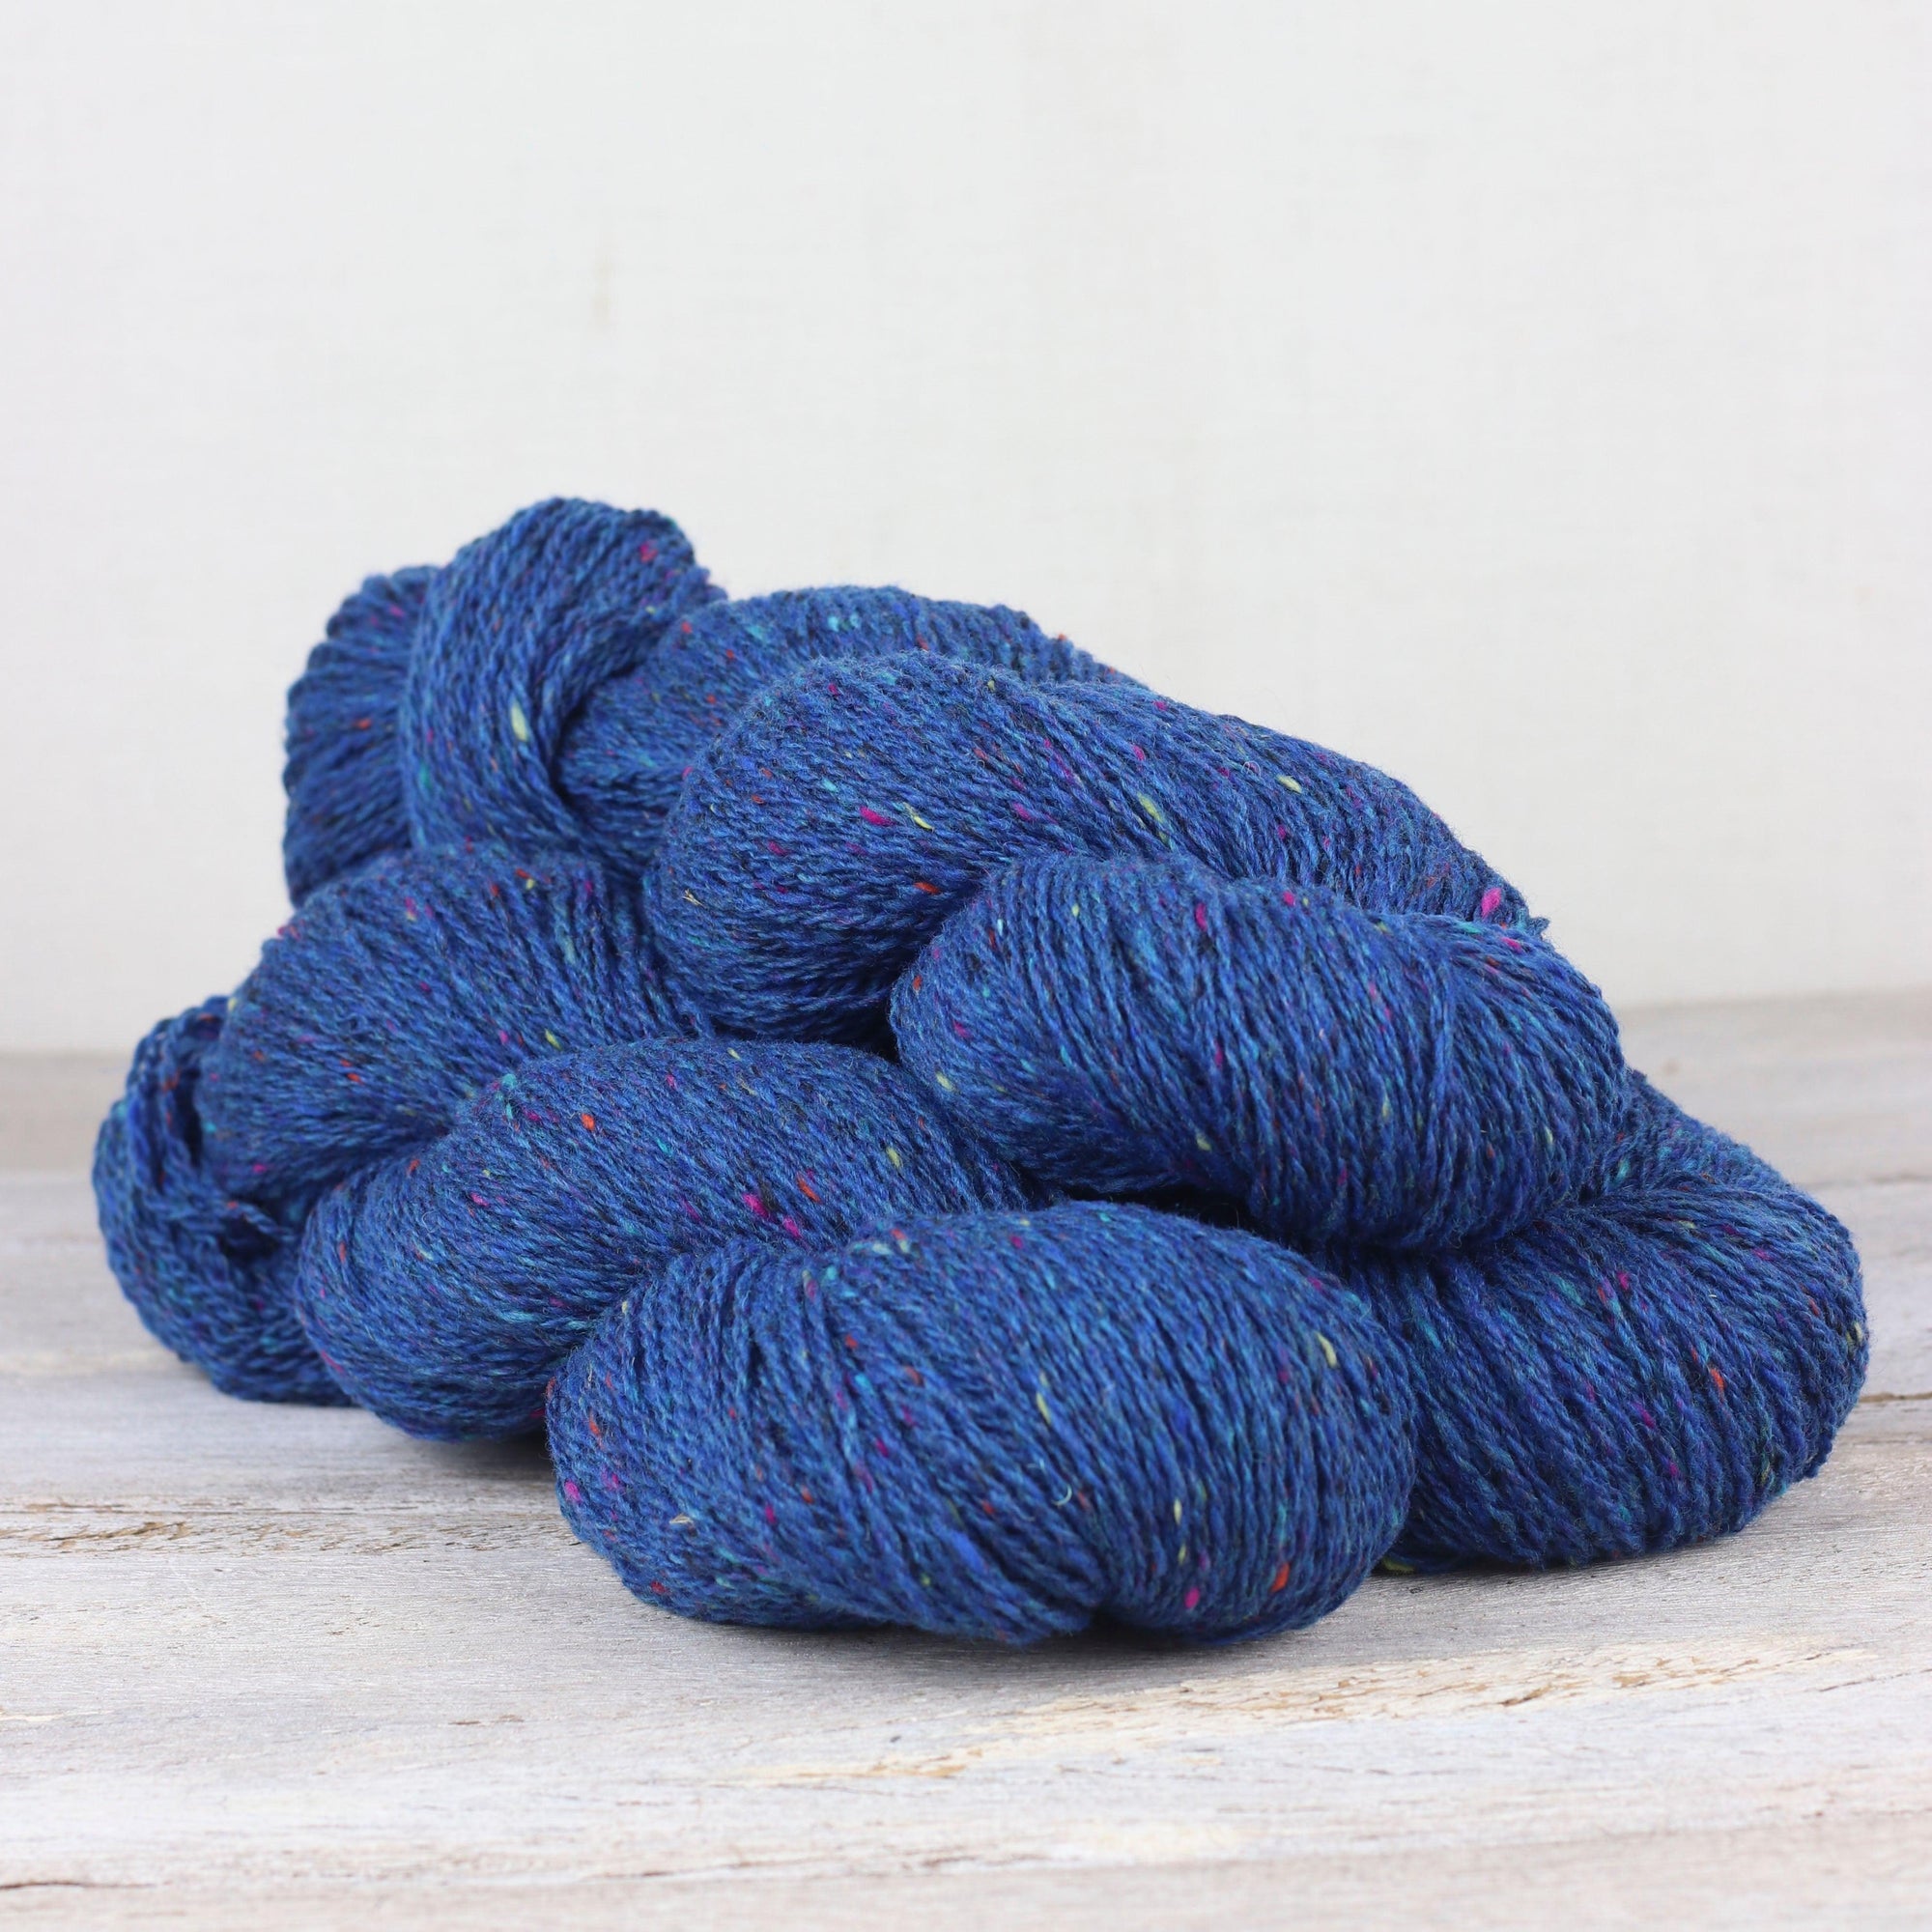 The Fibre Co. The Fibre Co. Arranmore Light - Rioga - DK Knitting Yarn